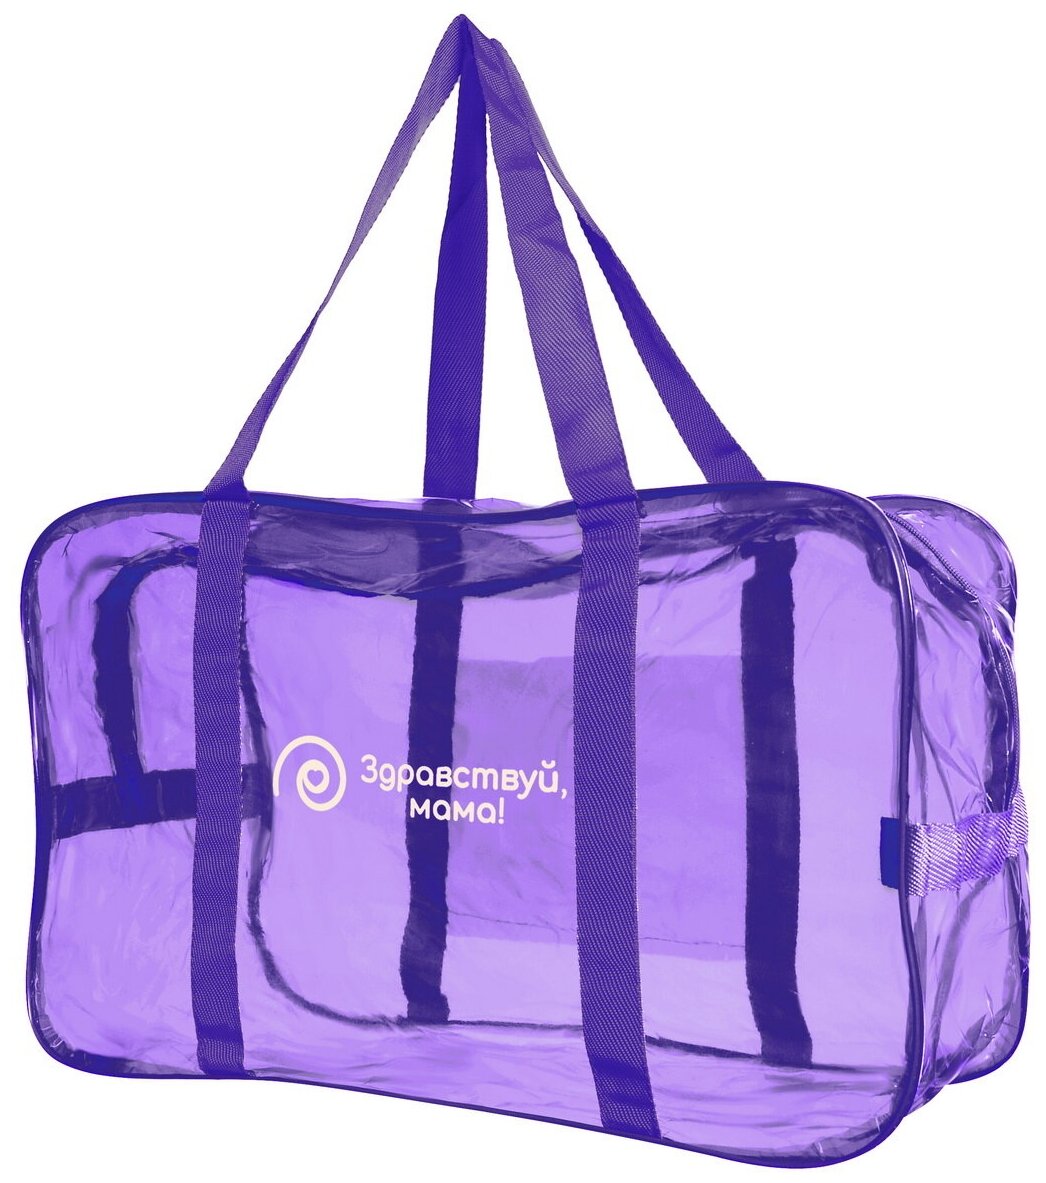 Сумка в роддом прозрачная готовая для мамы и малыша "здравствуй, мама!", цвет темно-фиолетовый, одна большая сумка